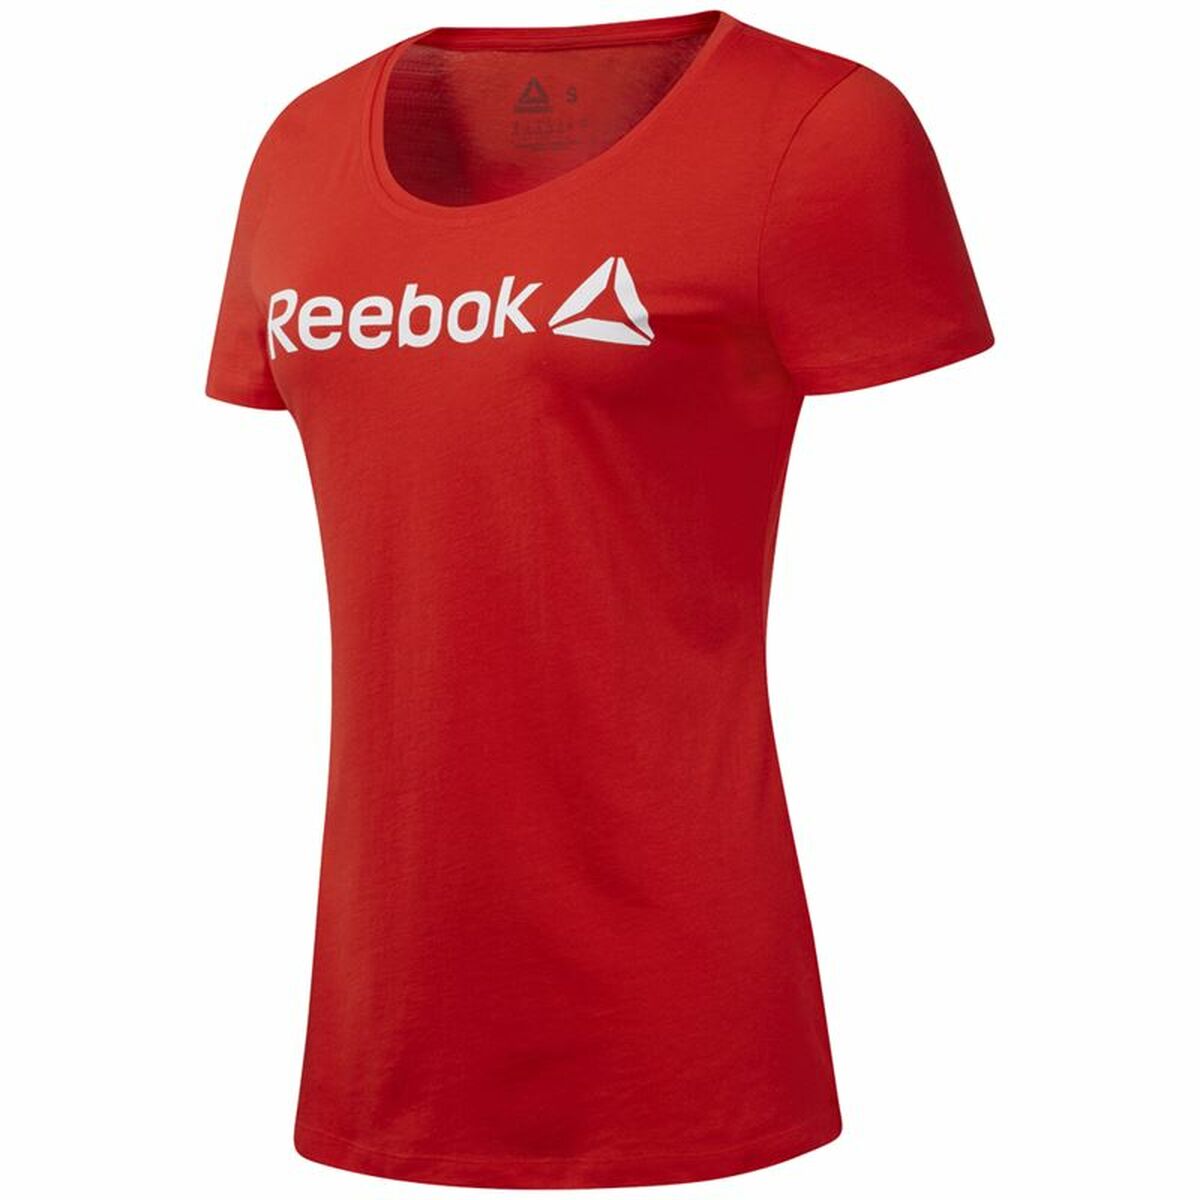 T-shirt à manches courtes femme Reebok Scoop Neck Rouge